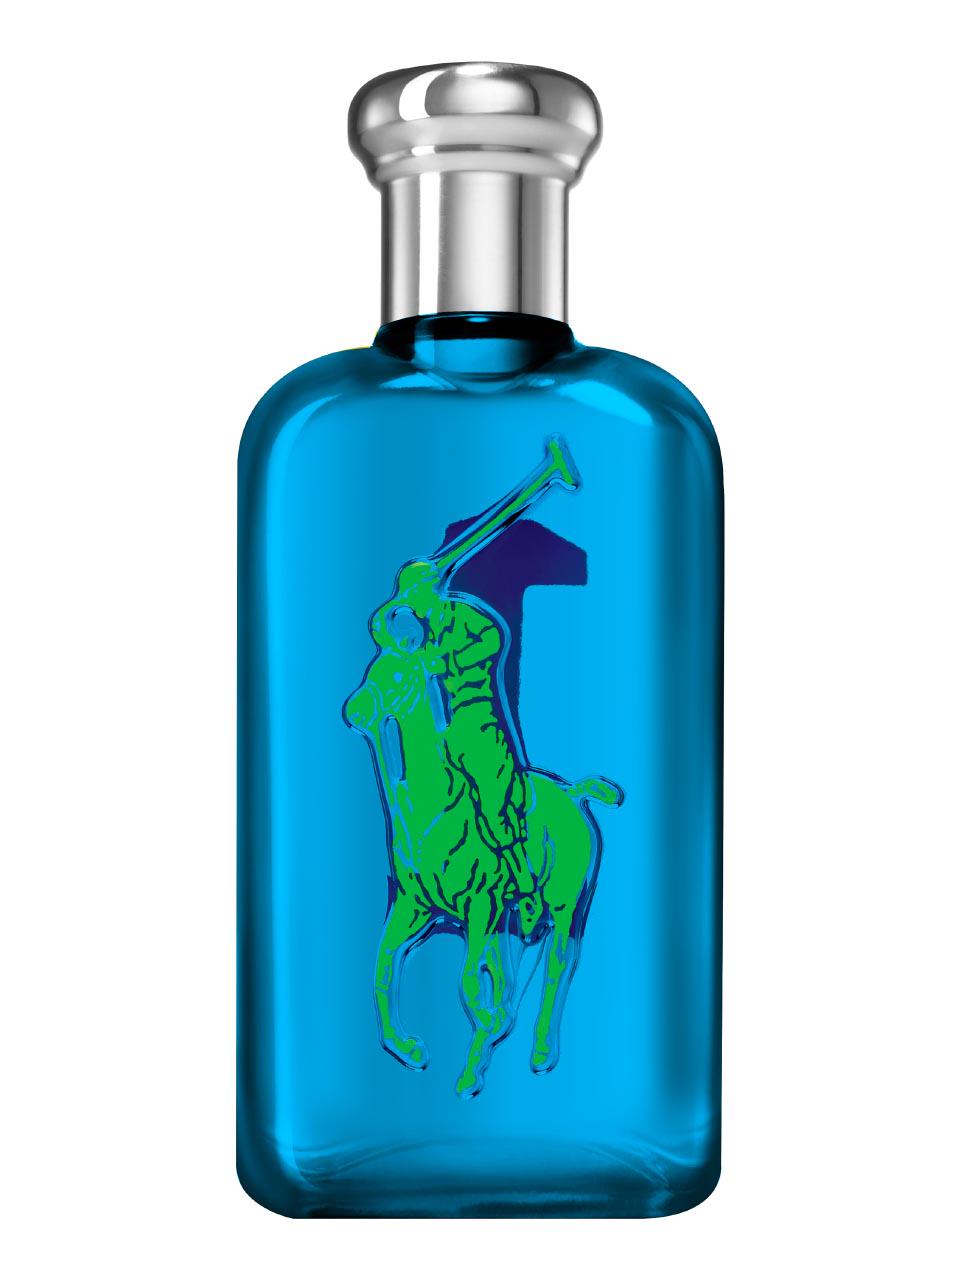 Polo Ralph Lauren Big Pony Blue Eau de Toilette Natural Spray 淡 